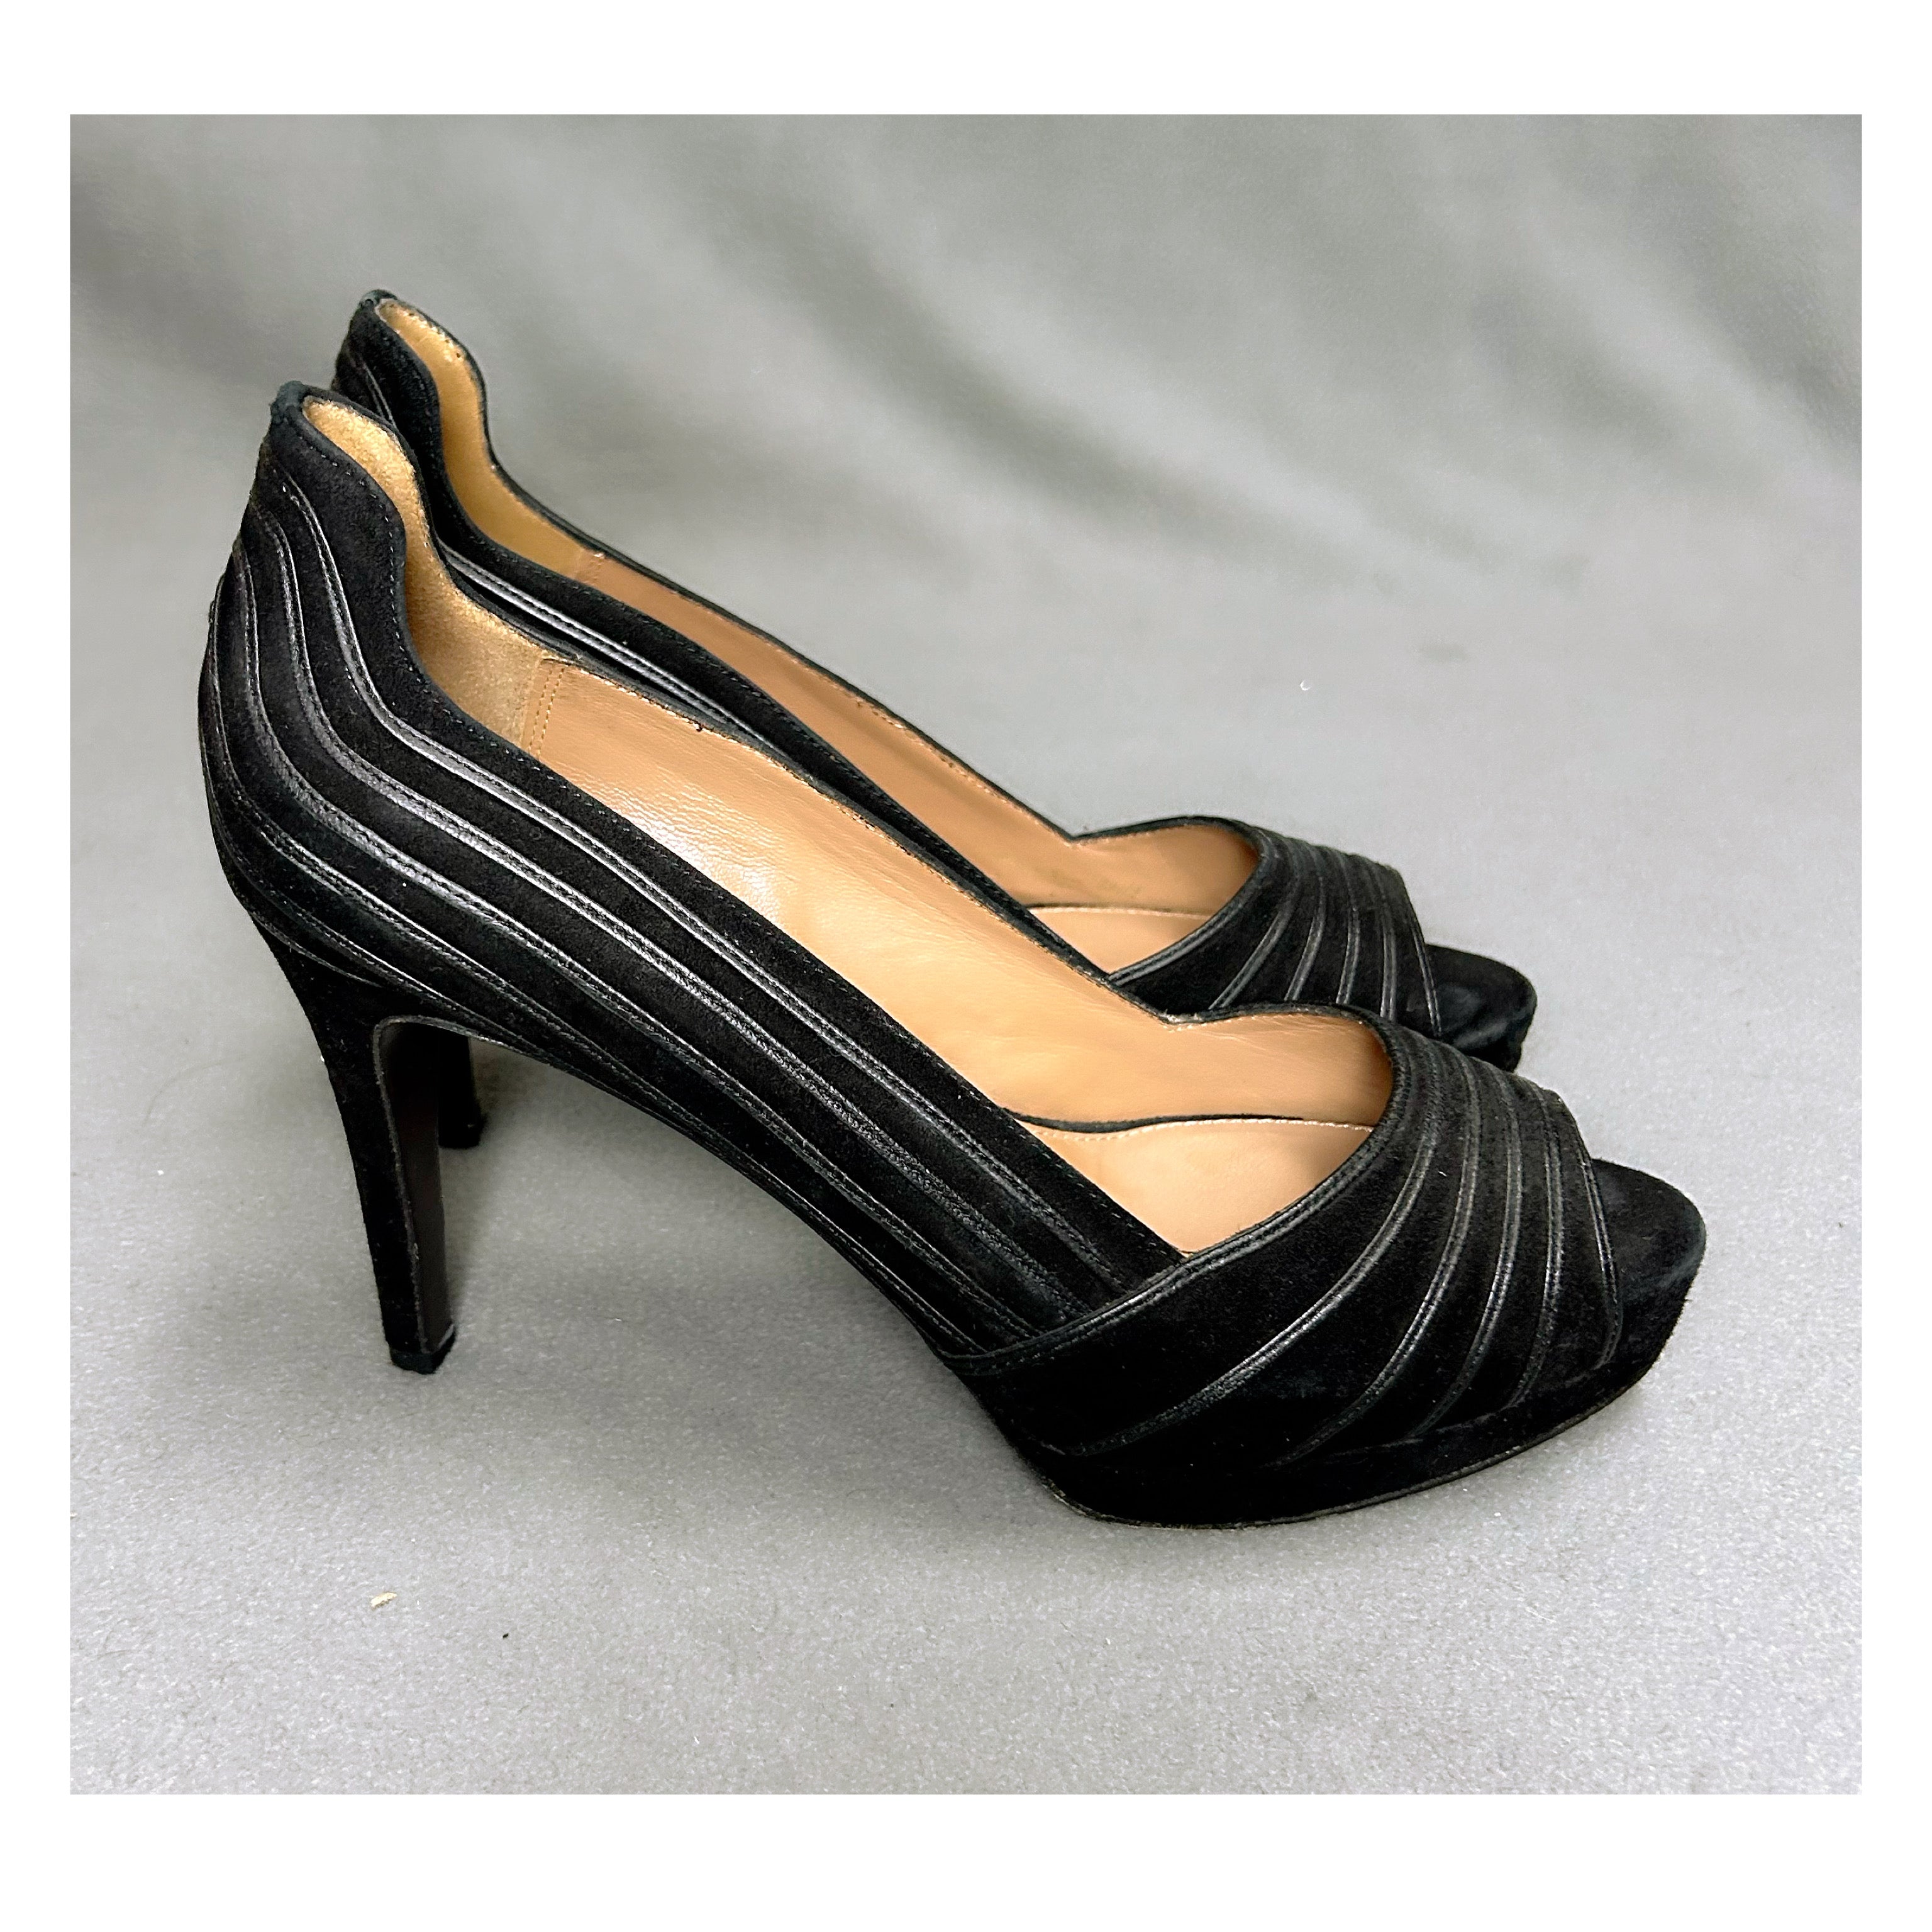 Elie Tahari black suede peep-toe platforms, size 9.5